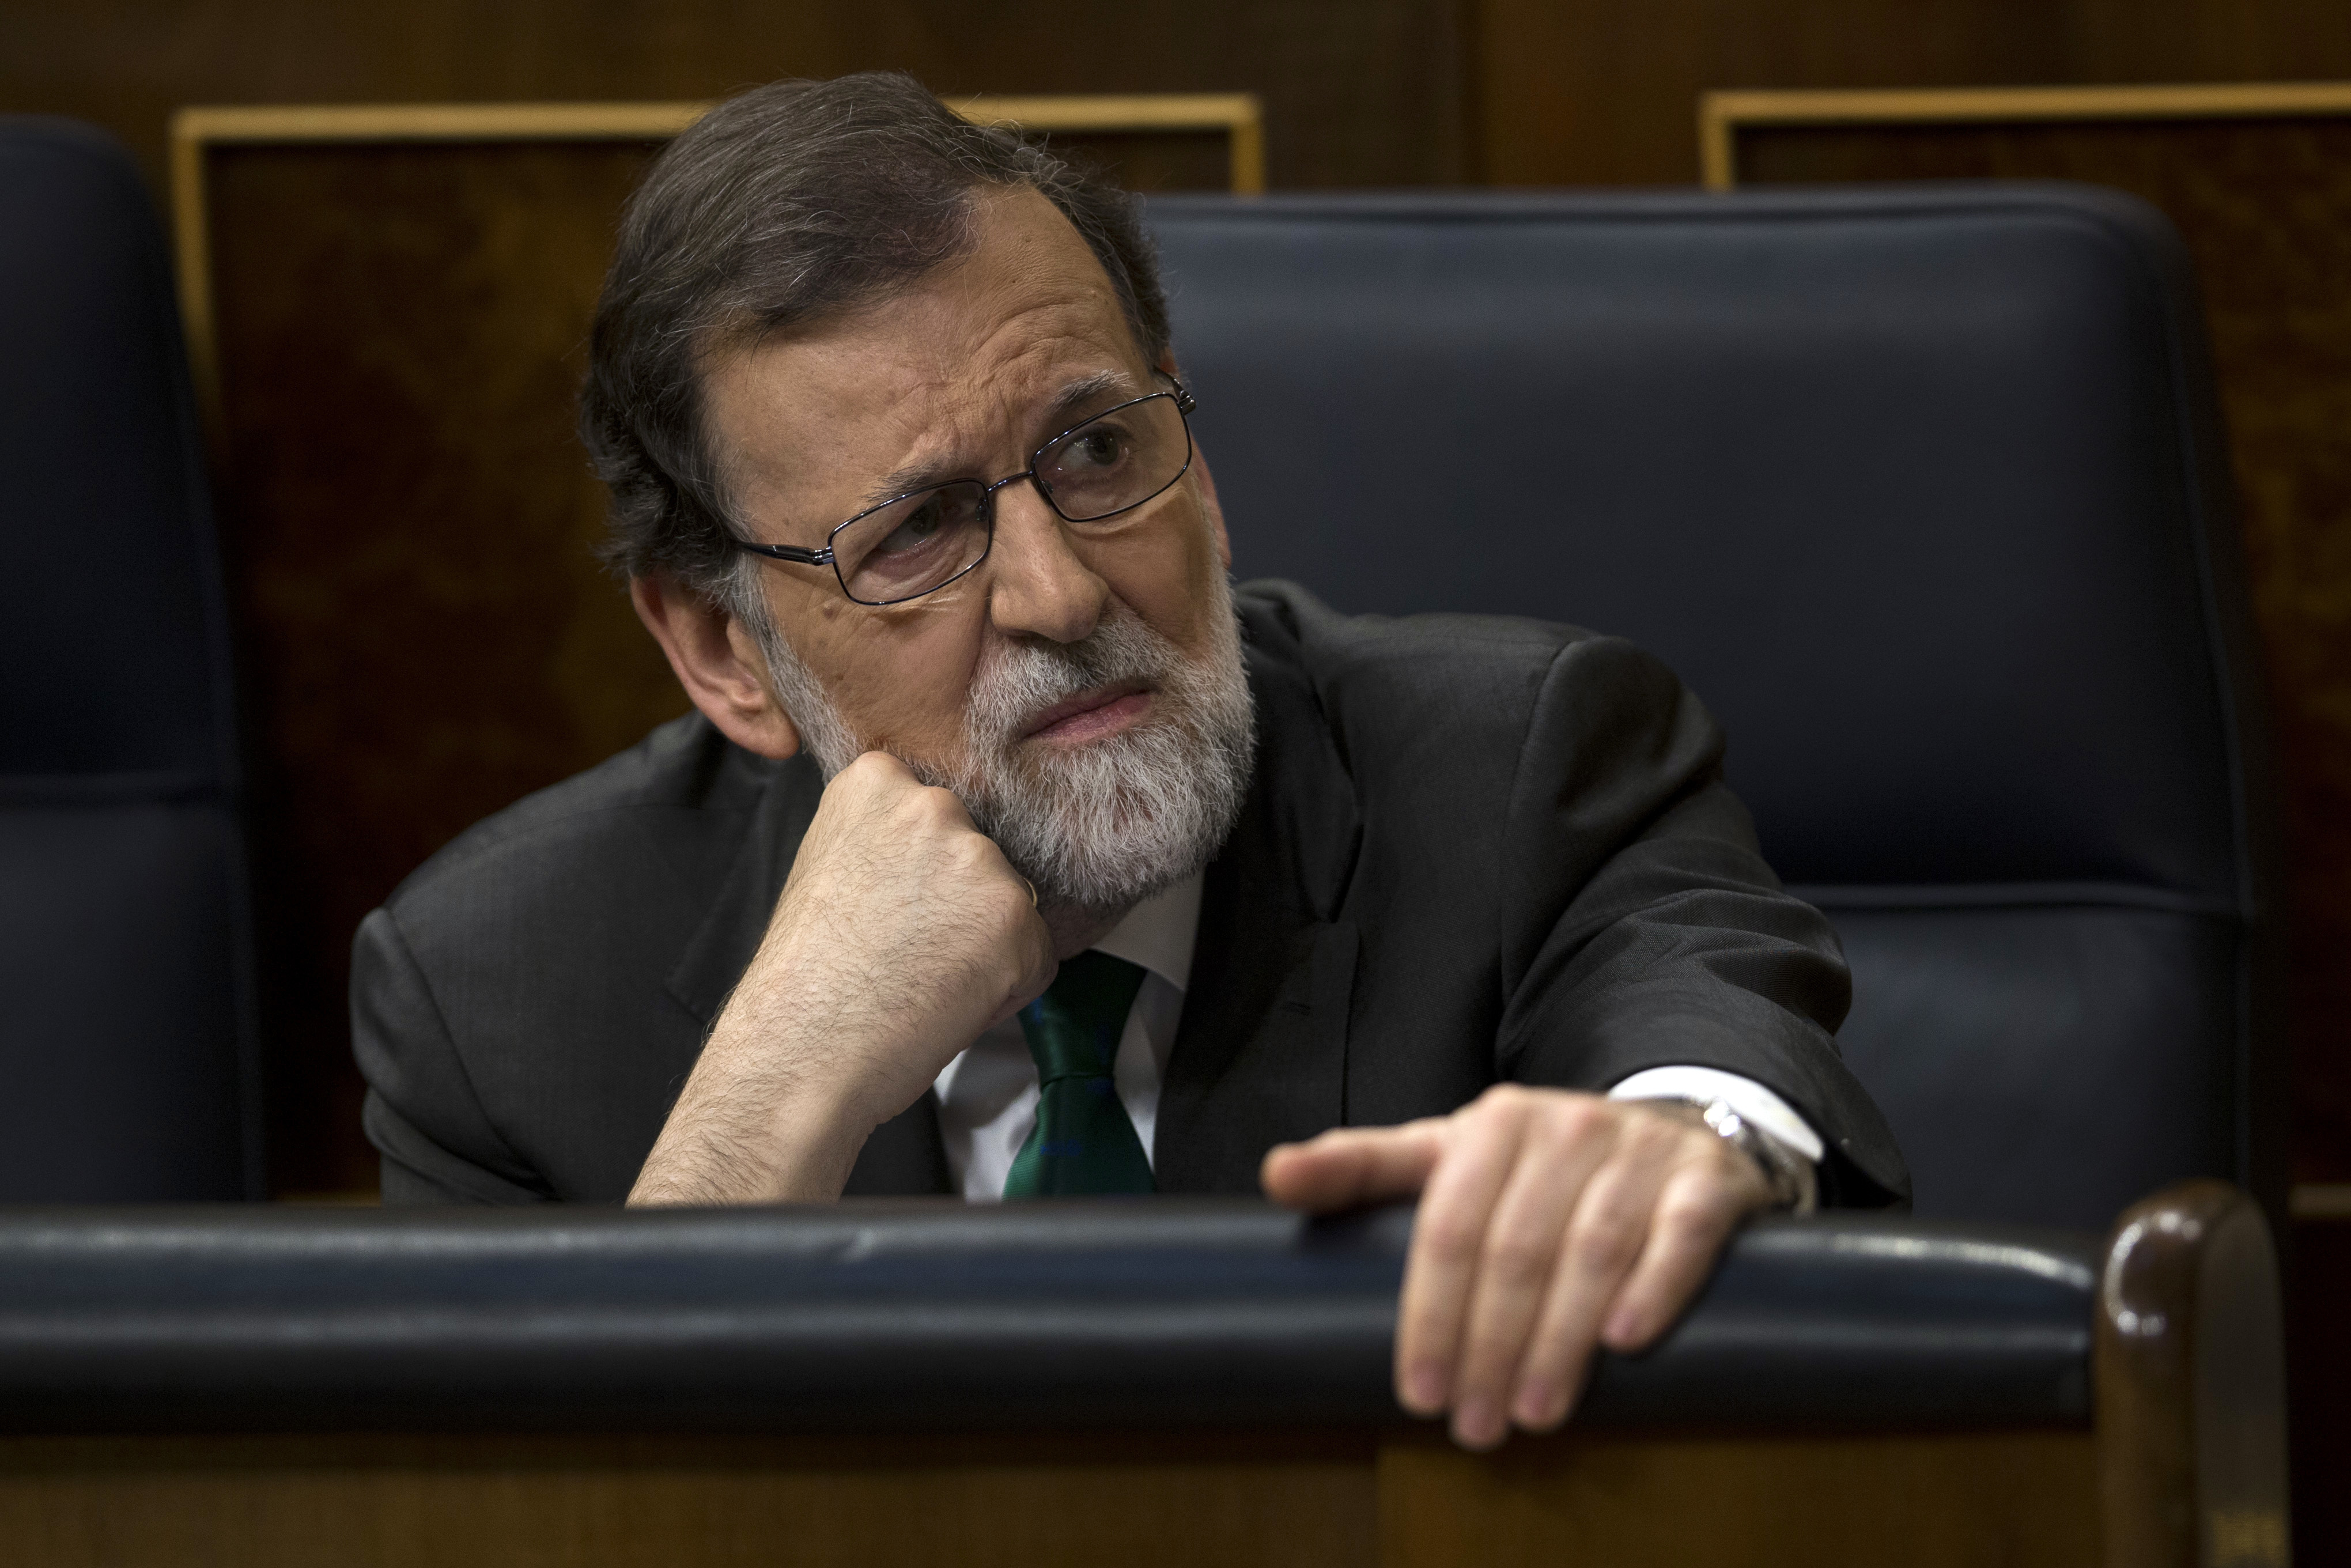 Perfil. Mariano Rajoy, el eterno superviviente al borde del precipicio